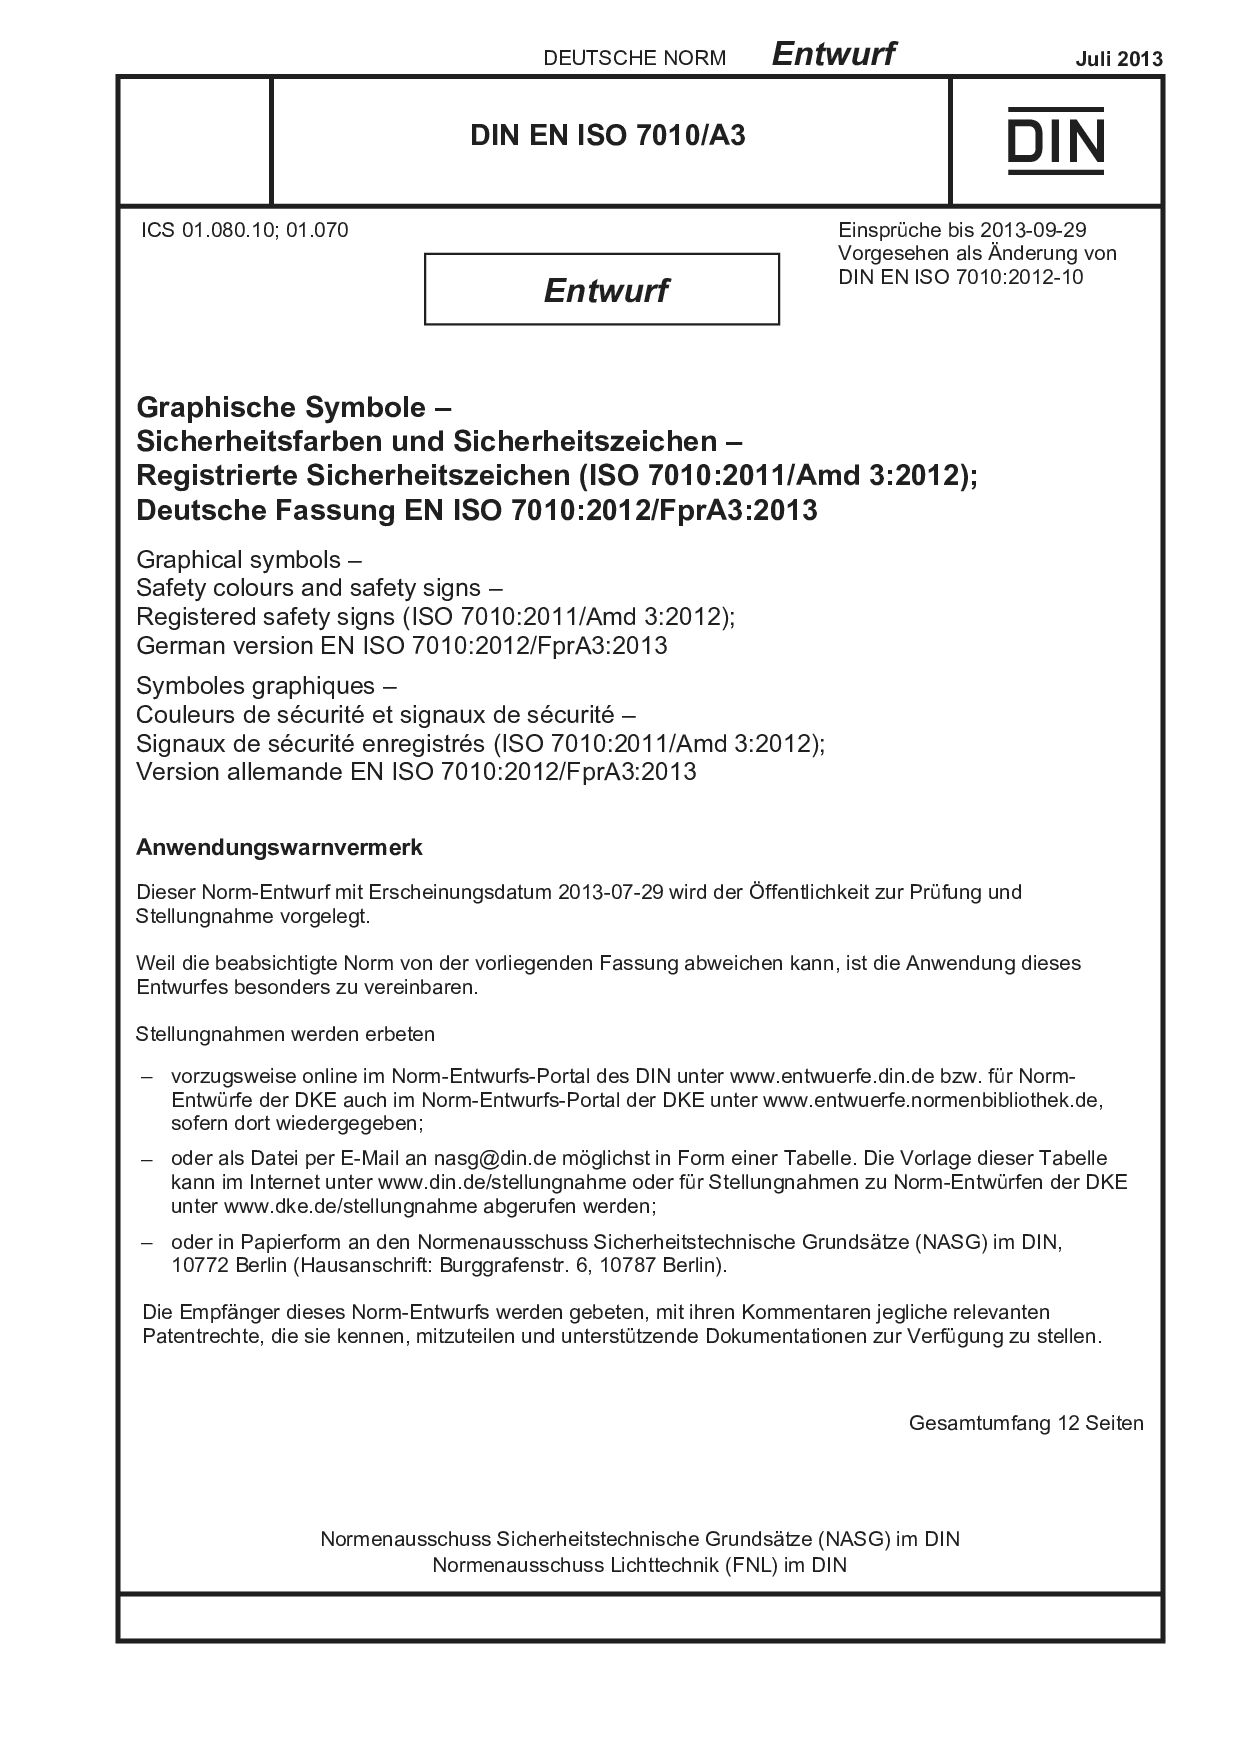 DIN EN ISO 7010 A3 E:2013-07